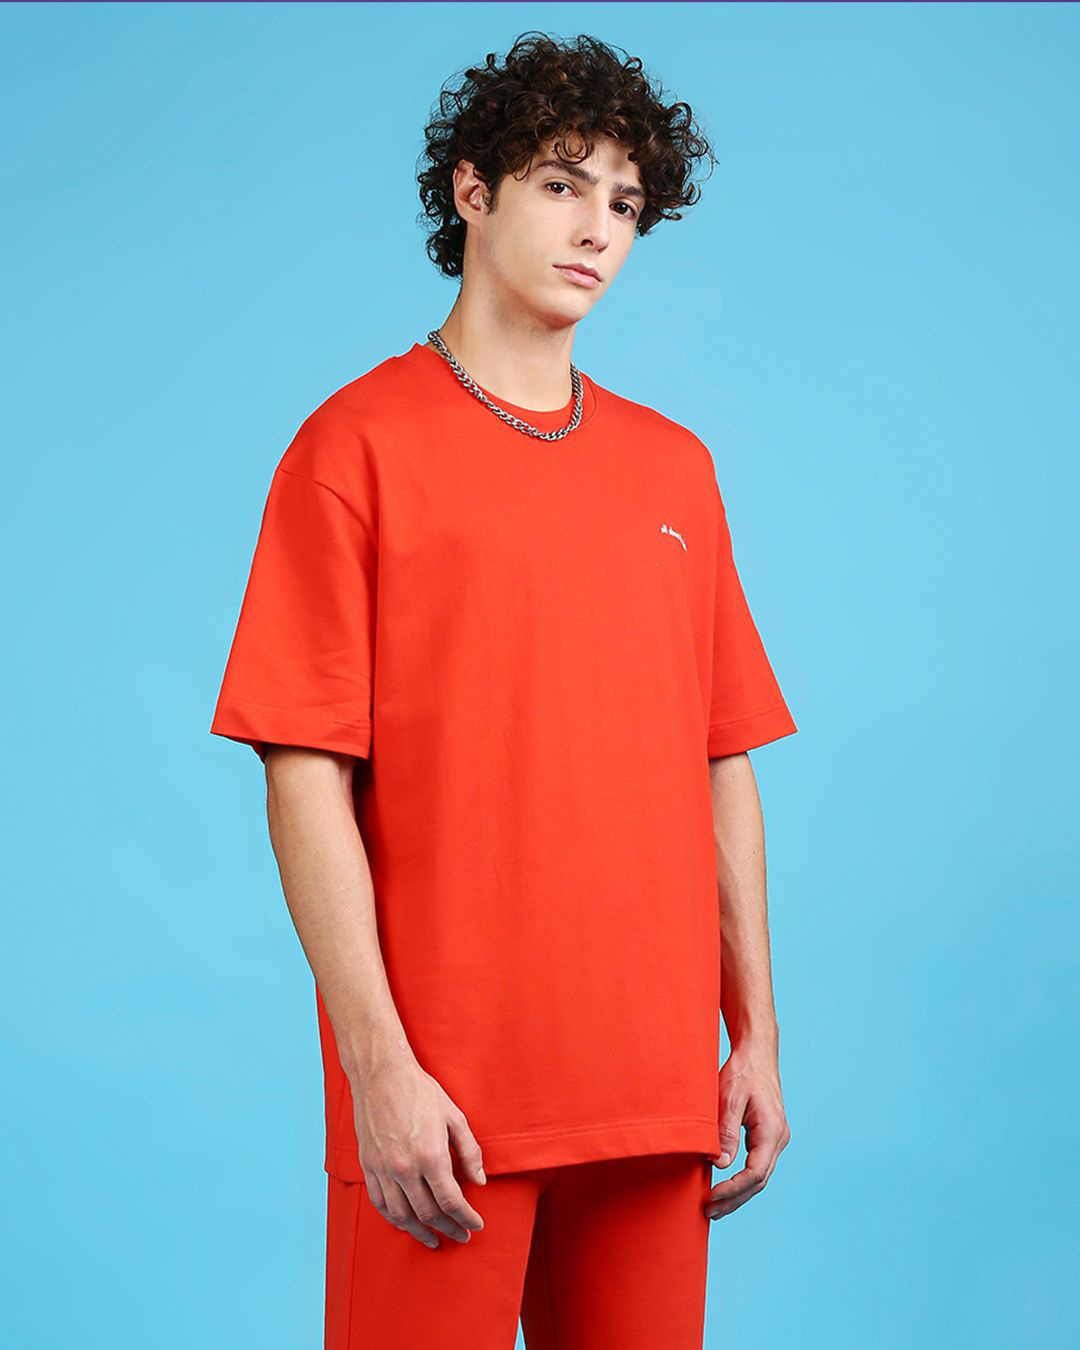 Buy Men's Orange Los Angeles Typography Oversized T-shirt Online at Bewakoof